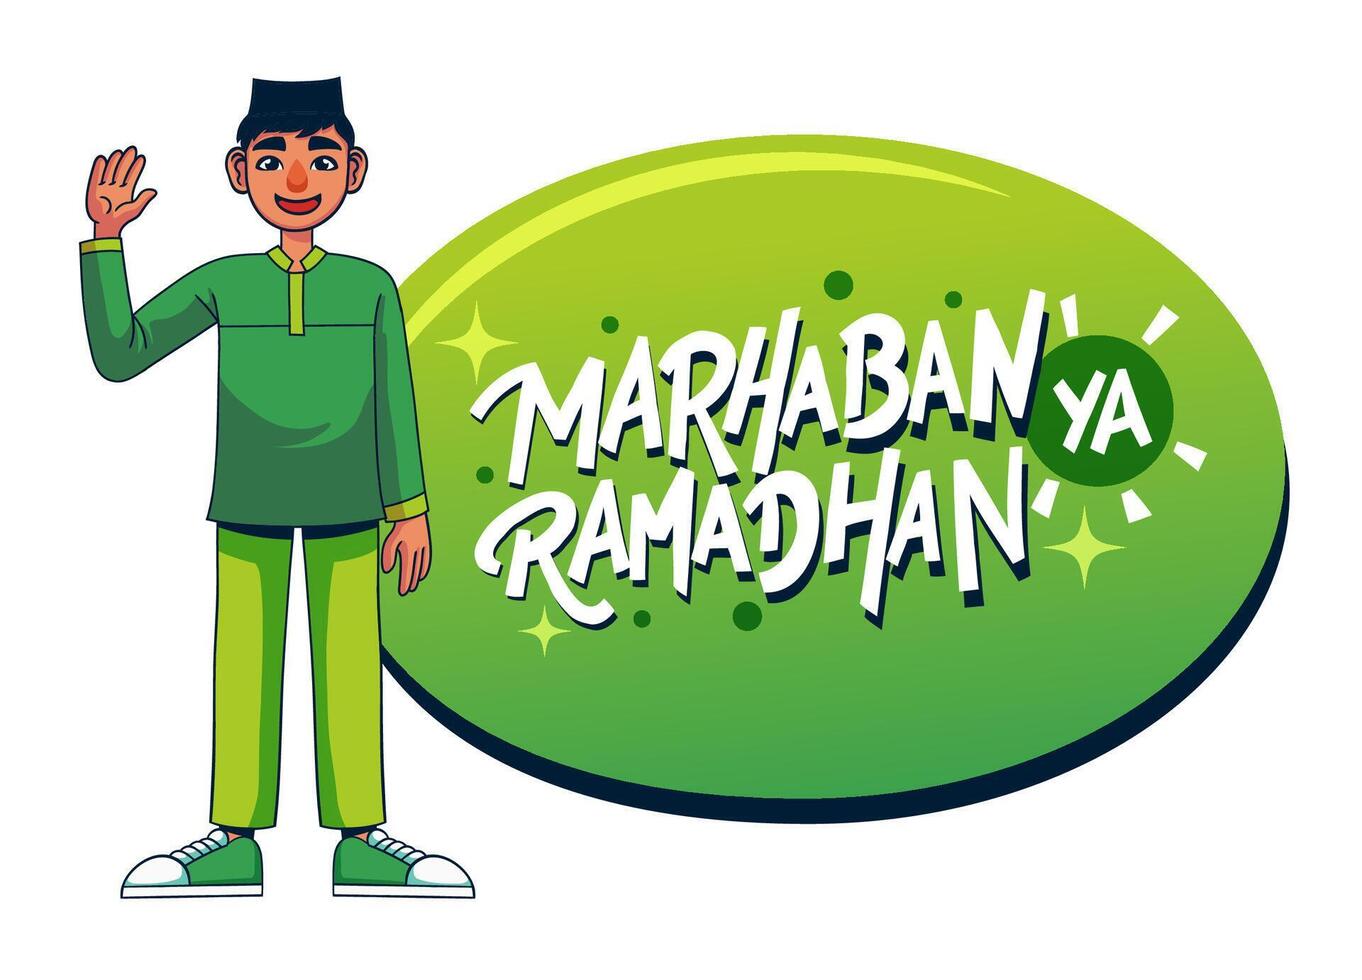 marhaban ya Ramadhan saluto con mano lettering e musulmano ragazzo illustrazione vettore